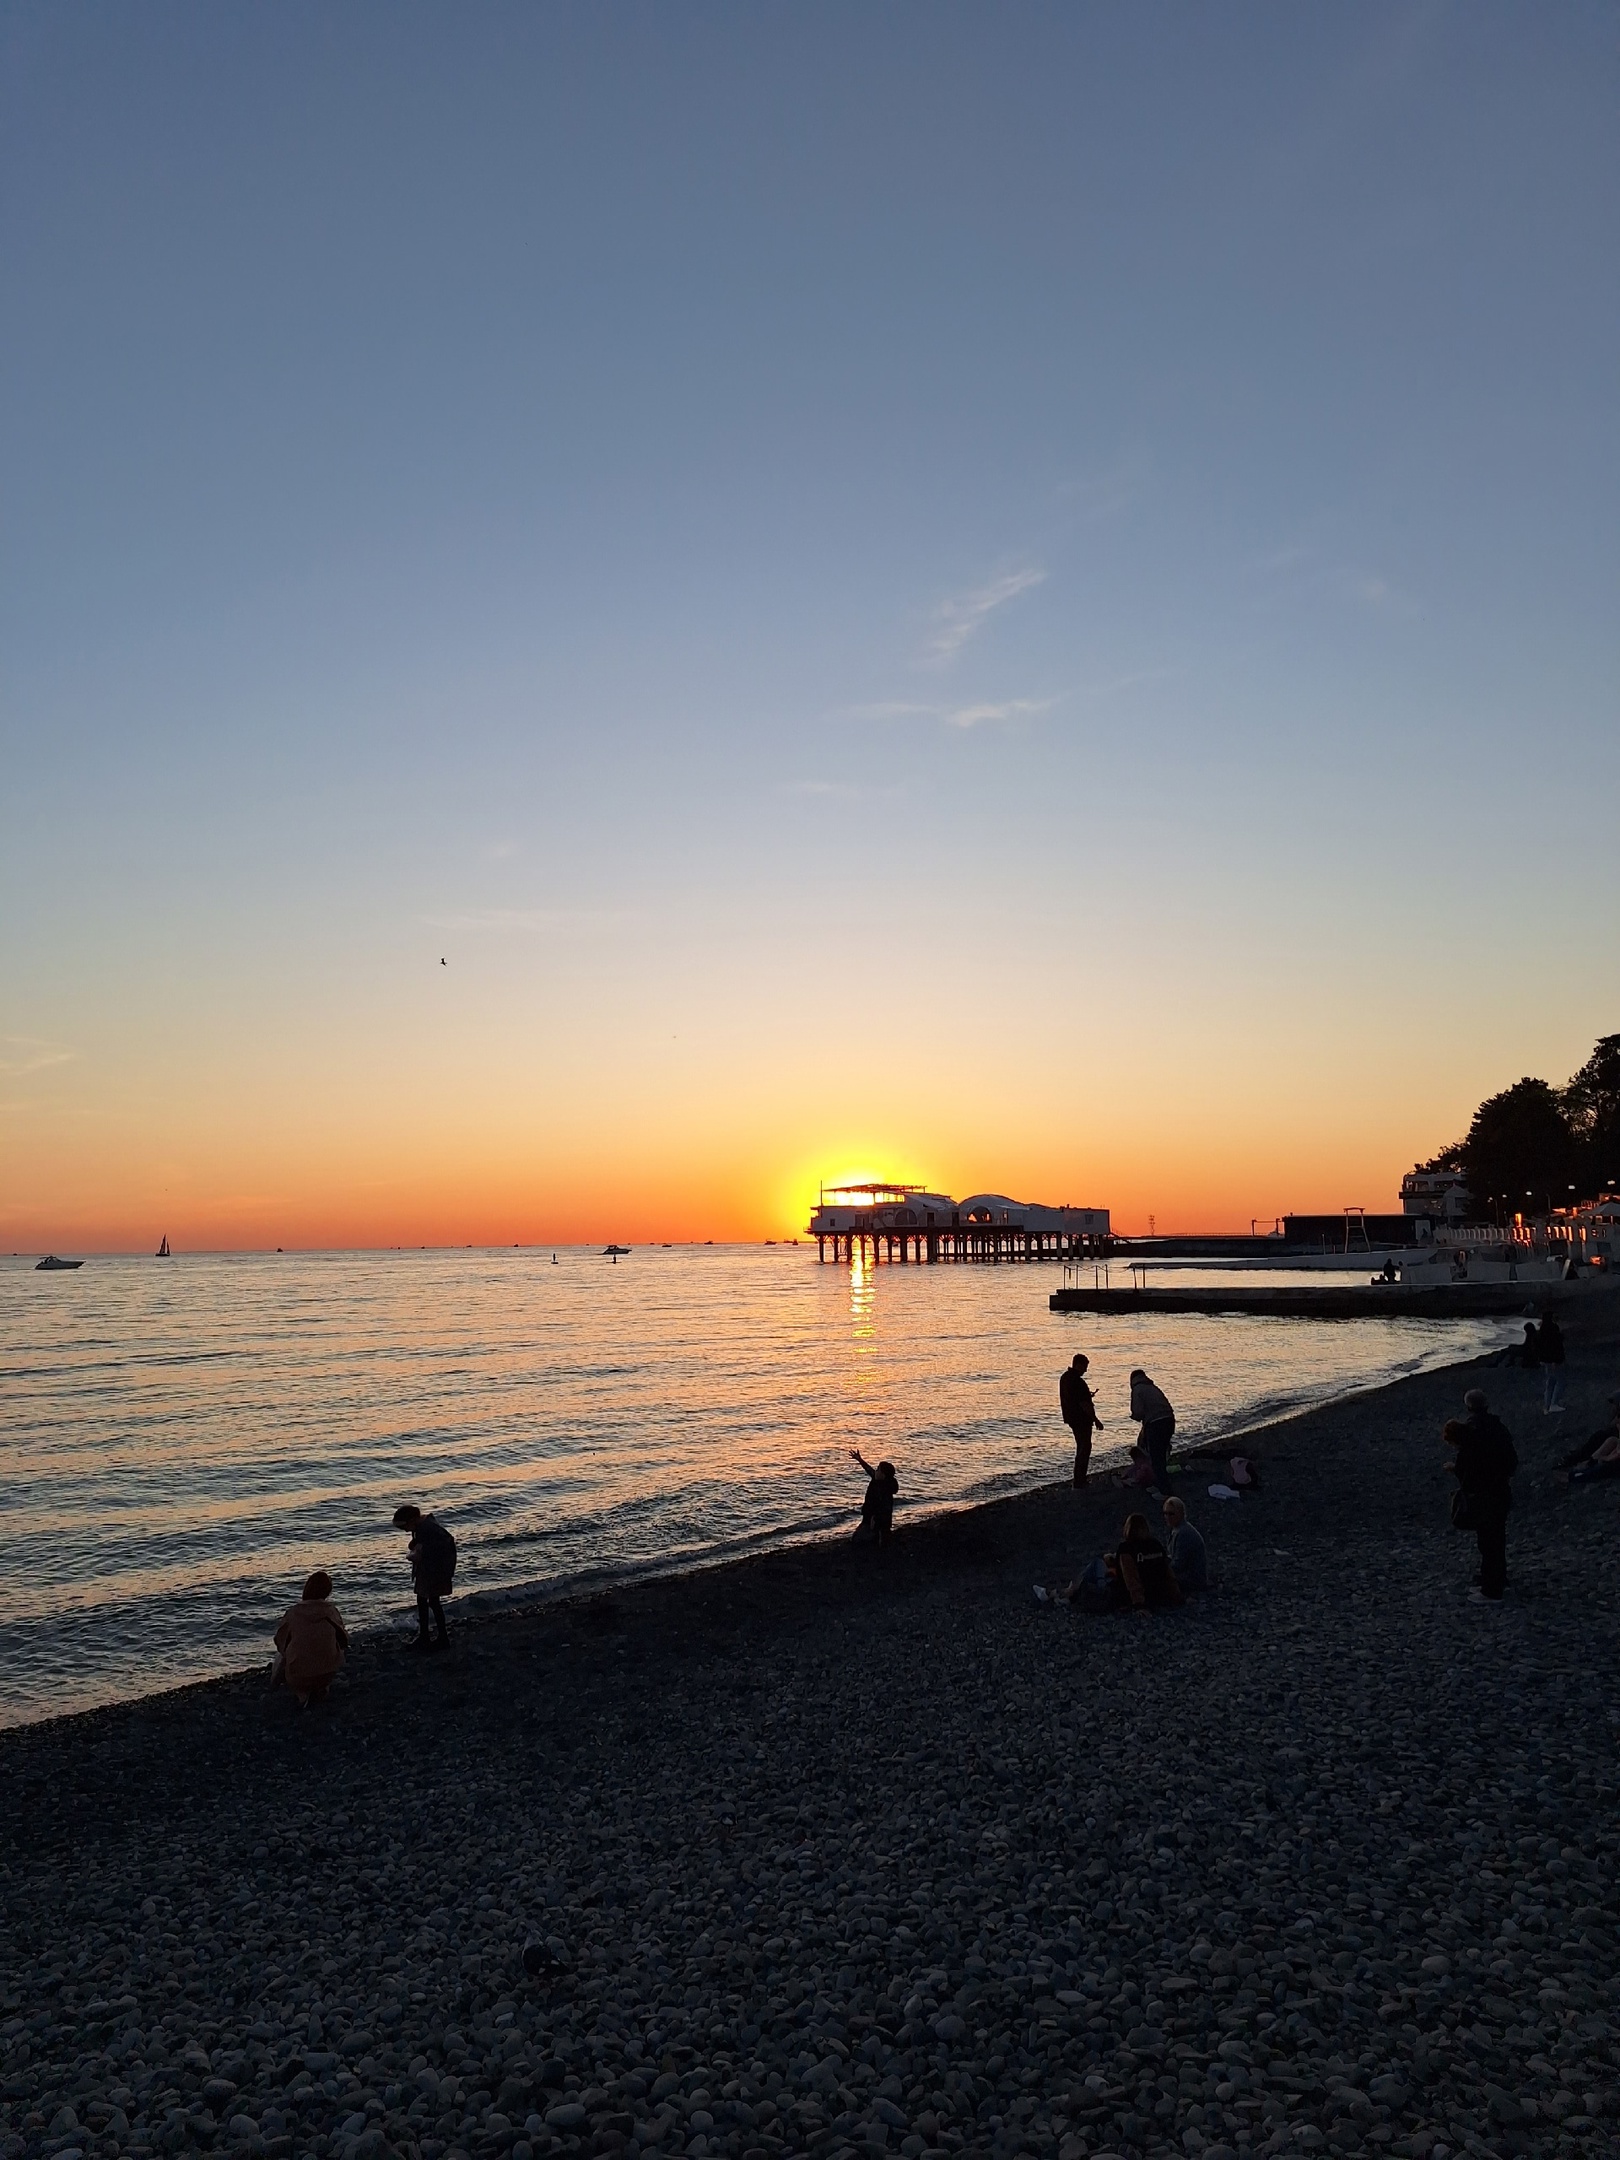 Отдых на Черном море может обернуться разочарованием: туристам стоит пересмотреть планы на отпуск